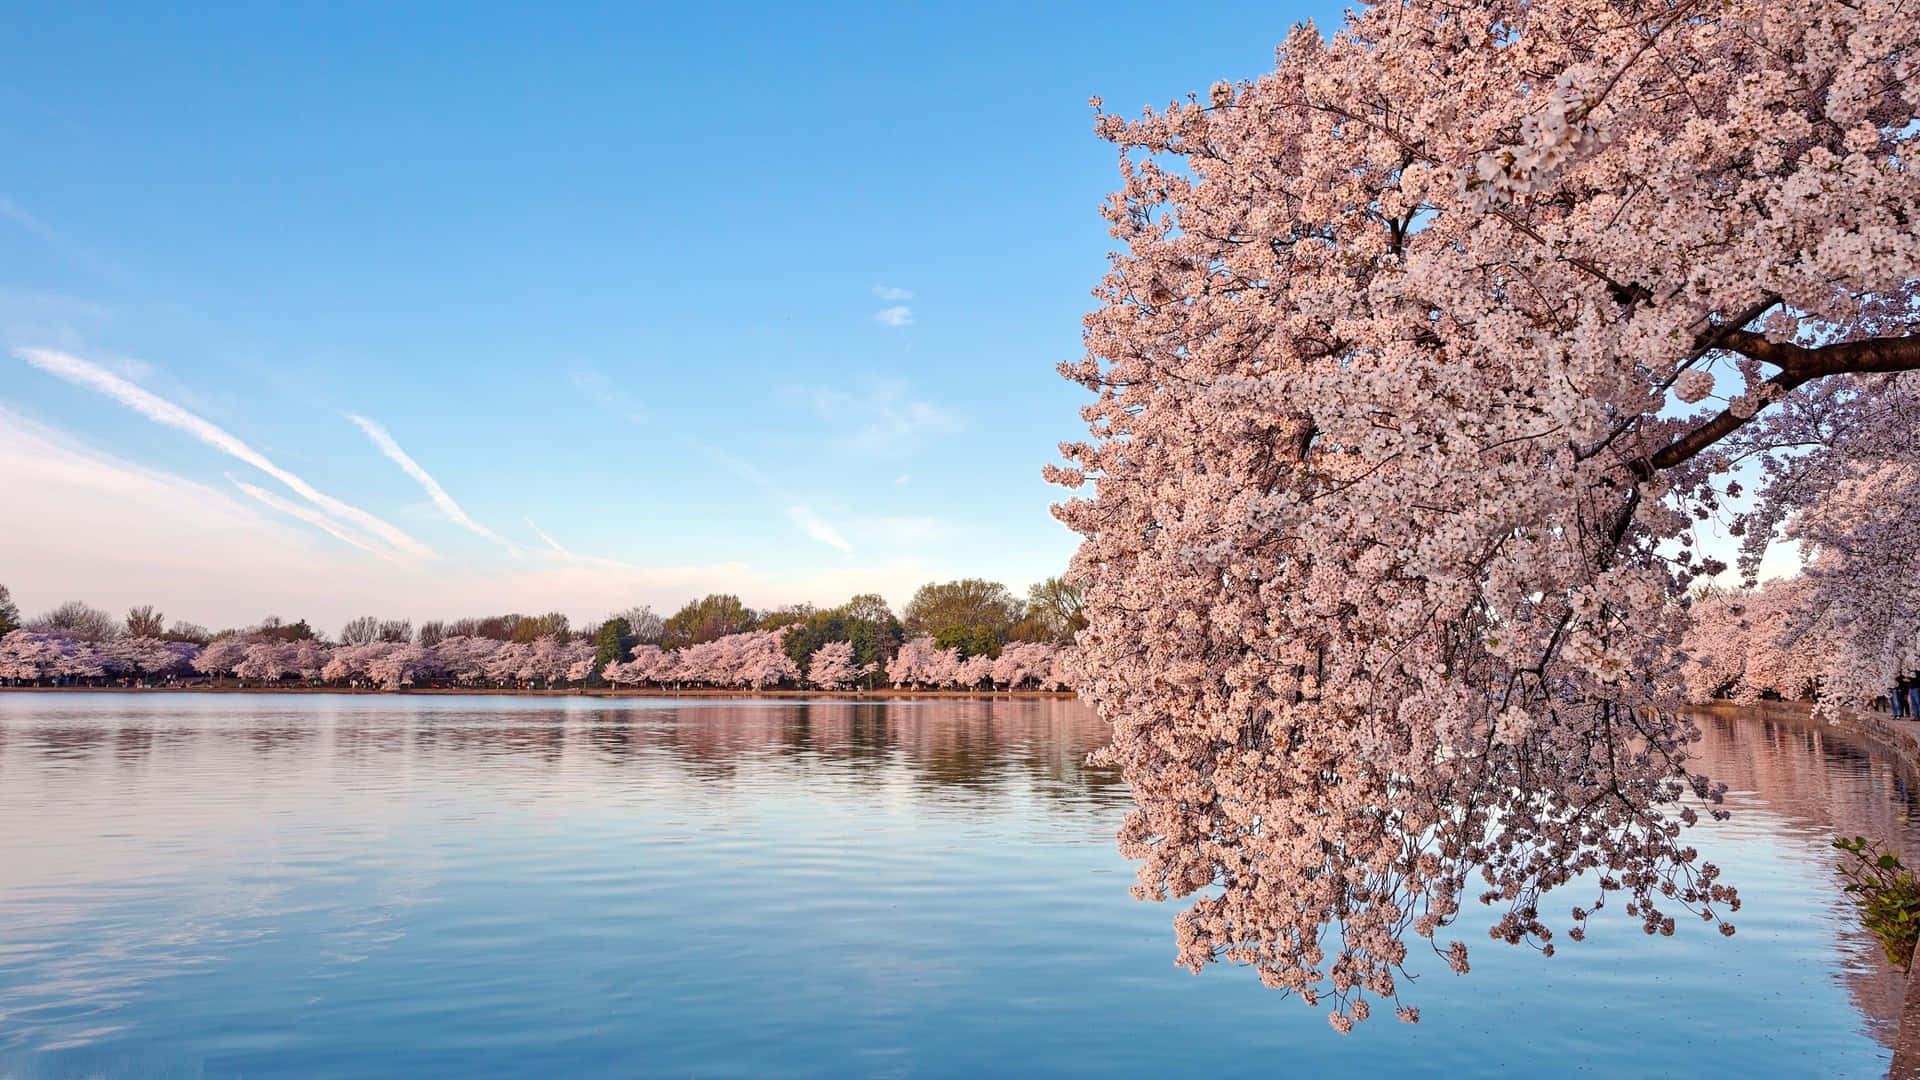 A breathtaking Cherry Blossom Tree canopy